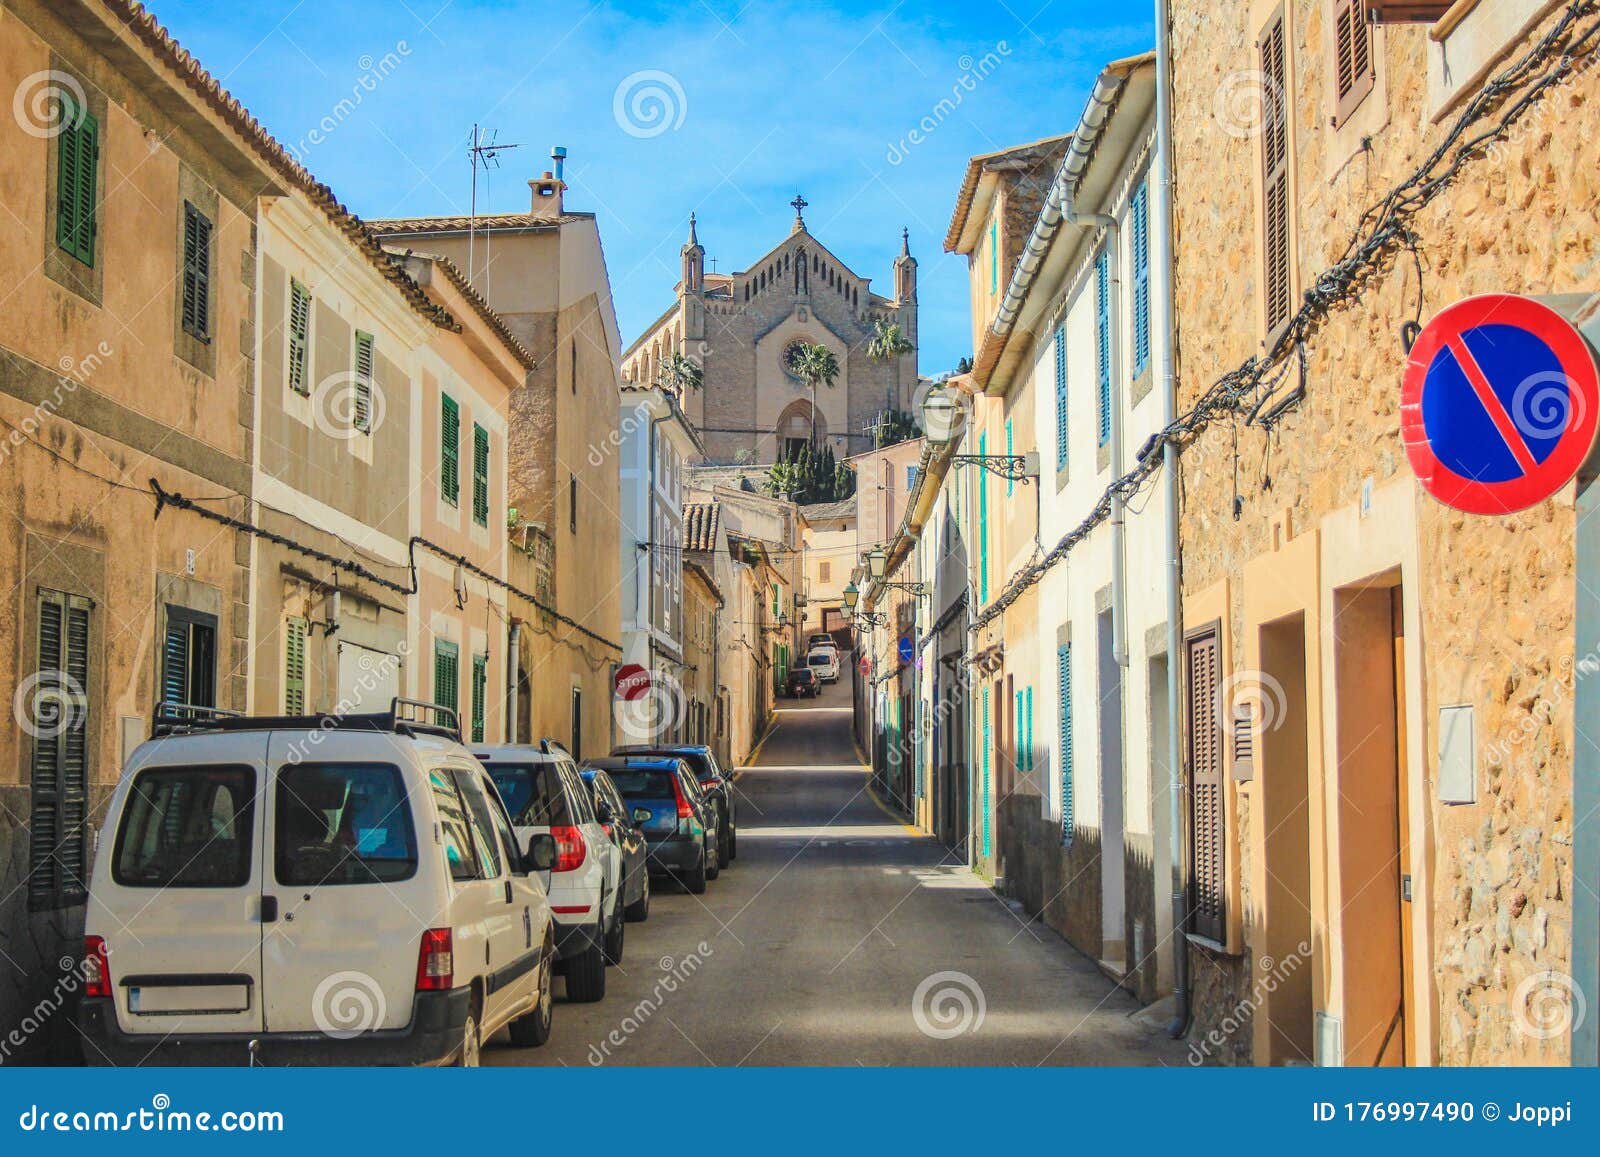 empty street in arta with transfiguracio del senyor church in the background - mallorca, spain